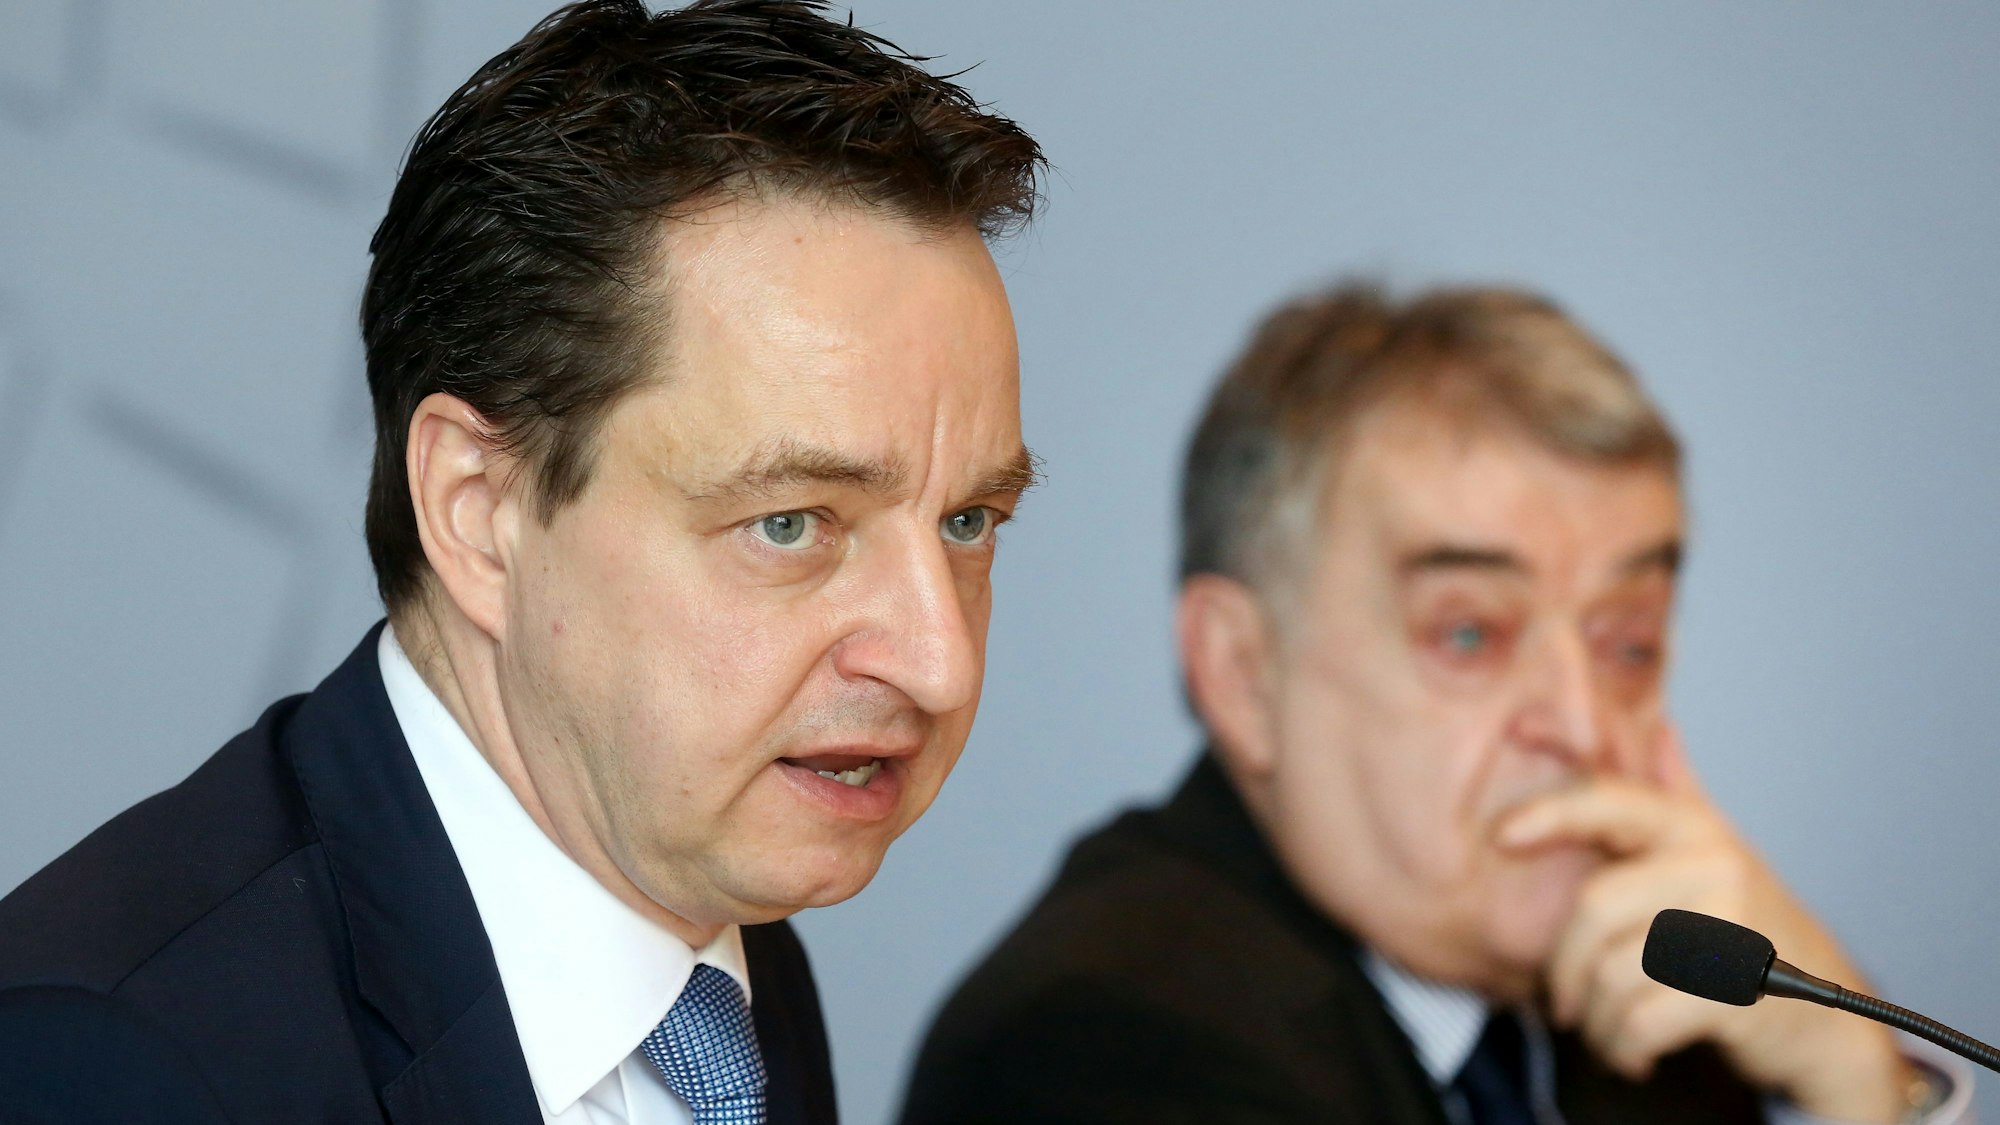 Der neue Verfassungsschutz-Chef Jürgen Kayser (l) sitzt bei einer Pressekonferenz neben NRW-Innenminister Herbert Reul (CDU) und spricht in ein Mikrofon.